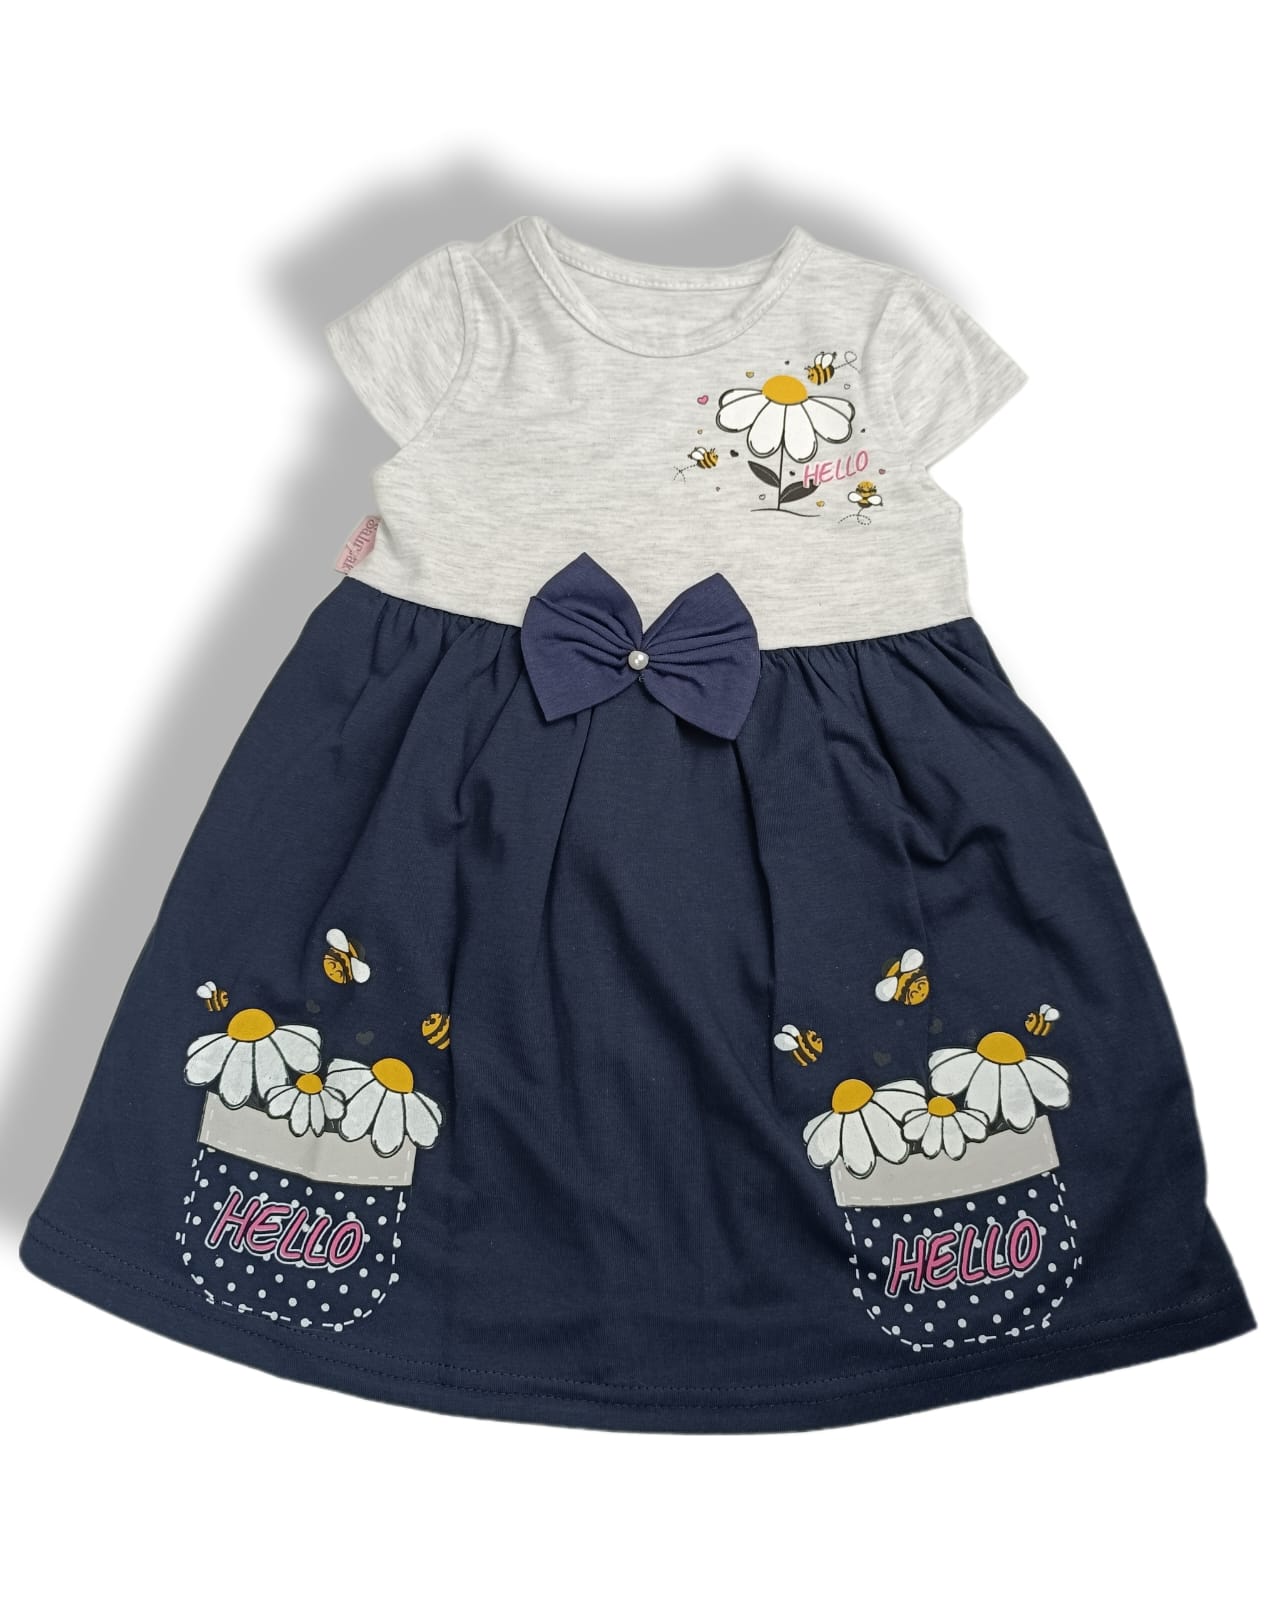 Καλοκαιρινό μπλε φόρεμα με μαργαρίτες (2-5 ετών)